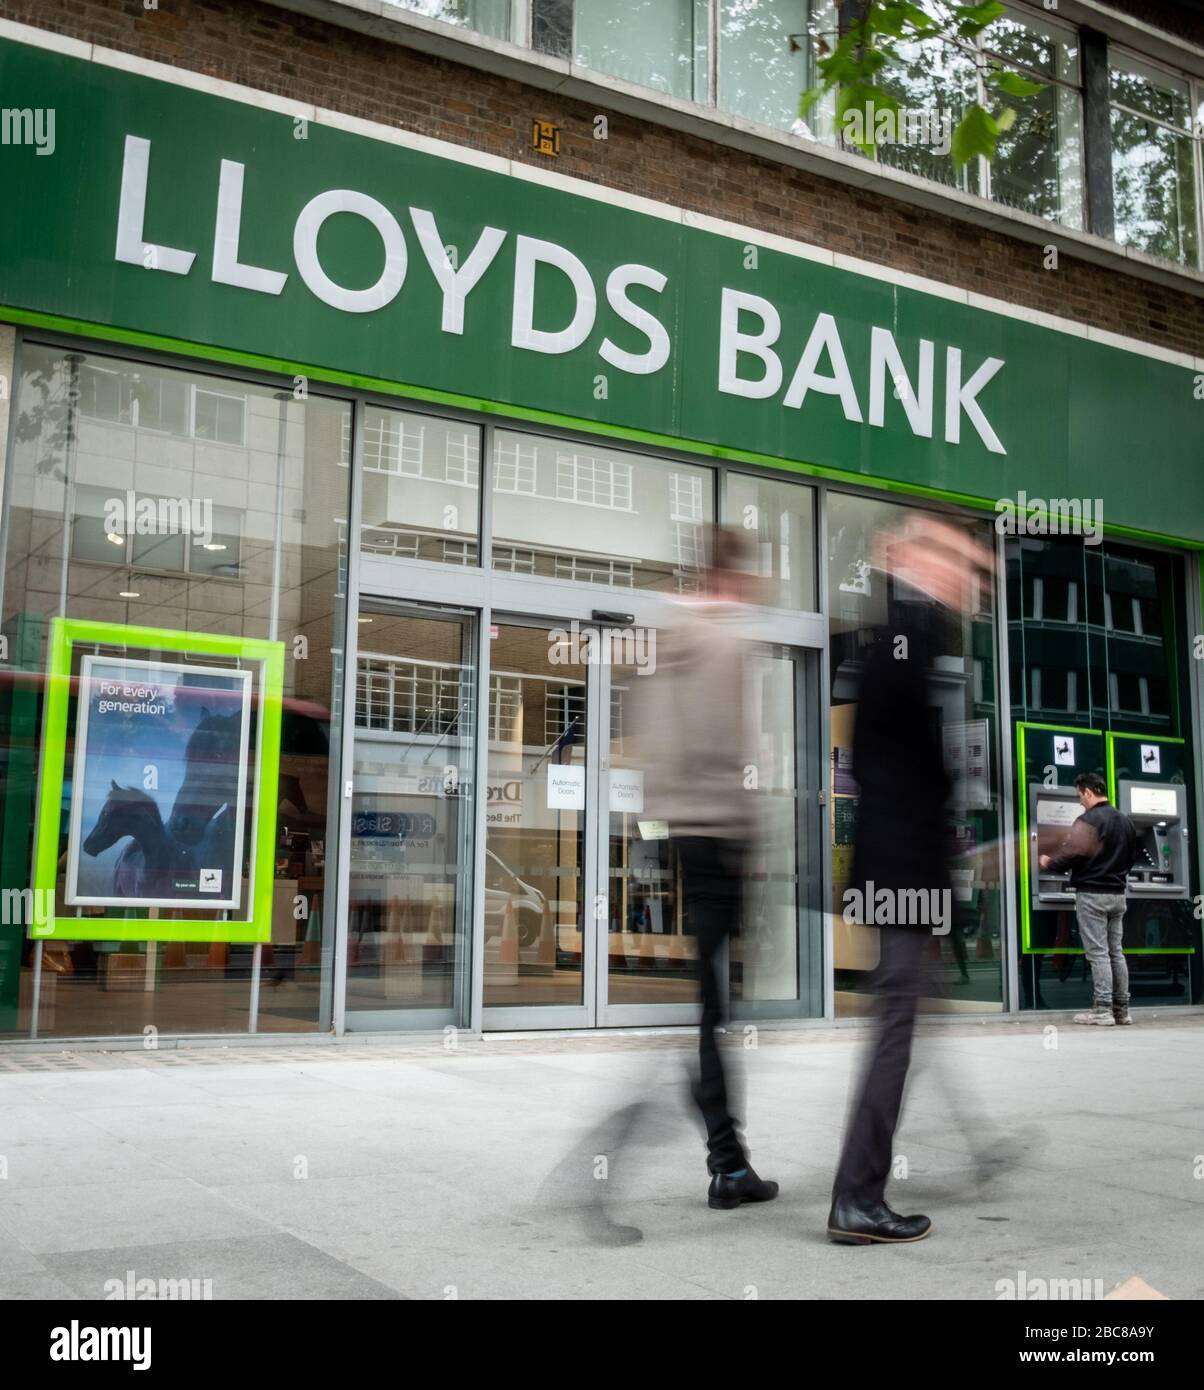 Lloyds- sucursal bancaria británica de calle alta, logotipo exterior / señalización- Londres Foto de stock